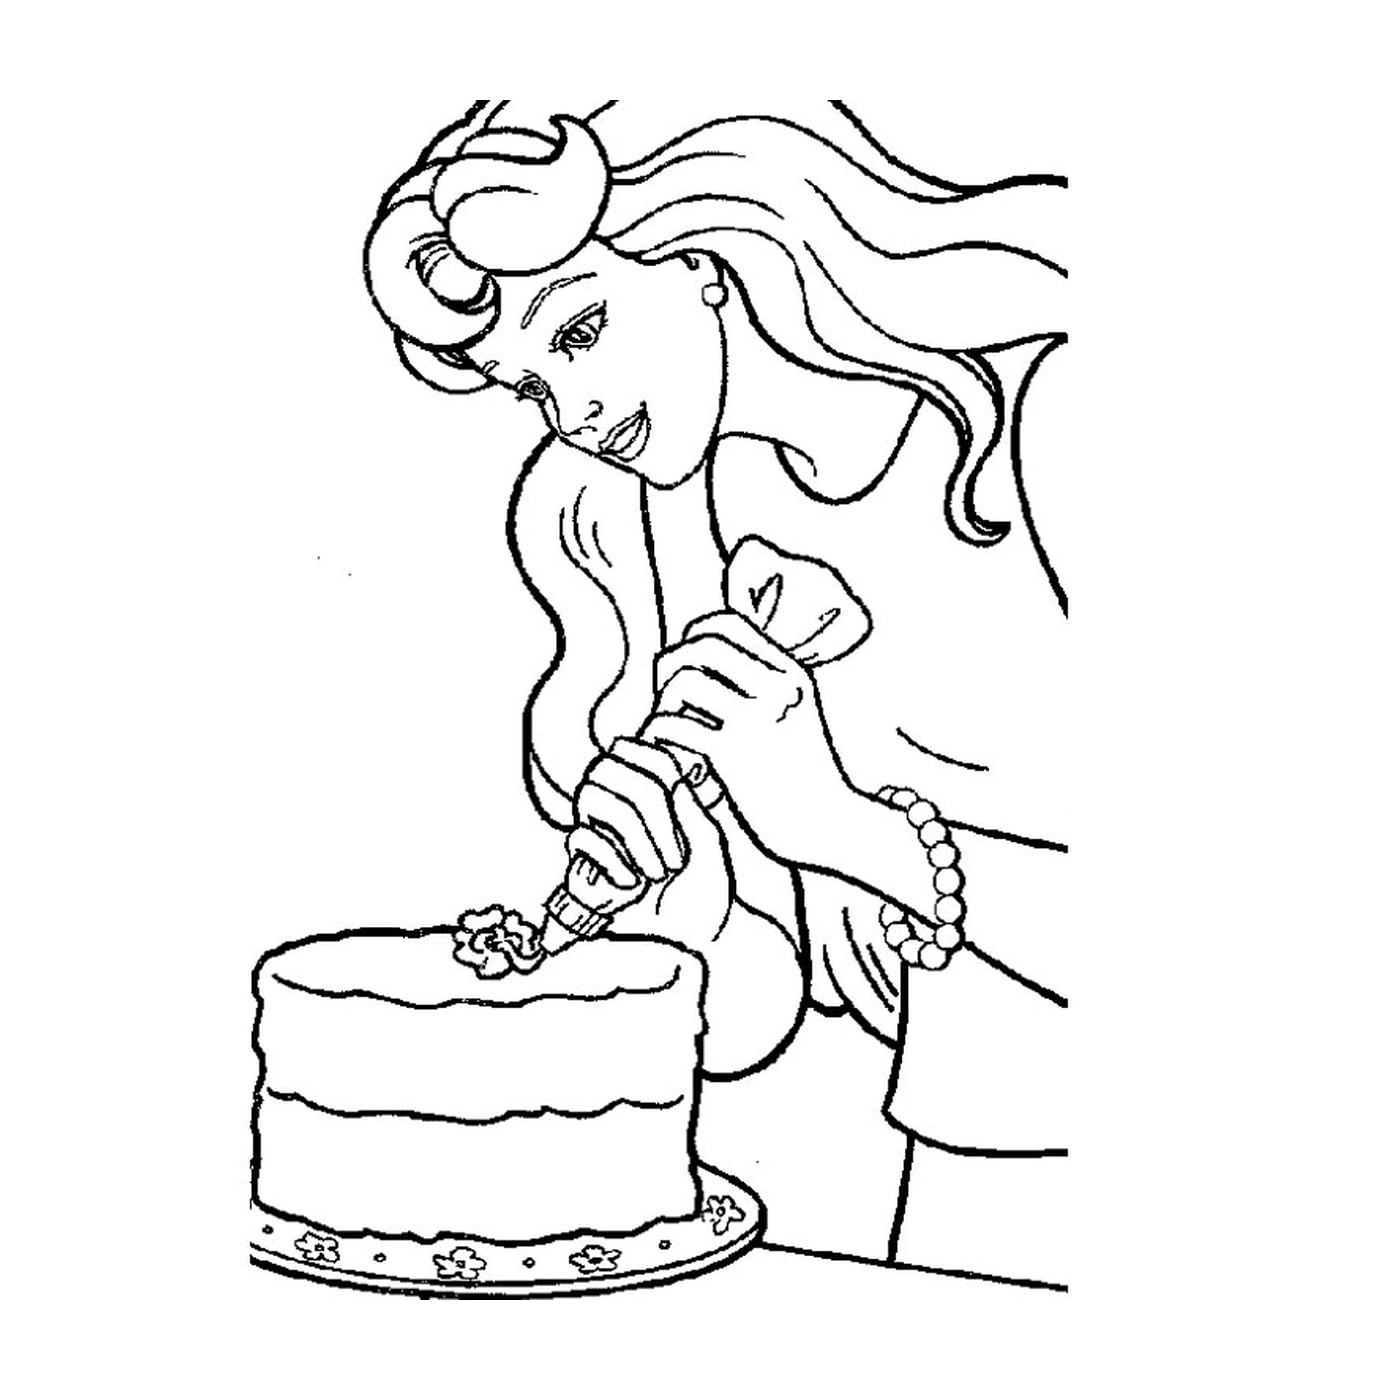  एक केक के साथ एक औरत कोश के साथ आभासी बार 